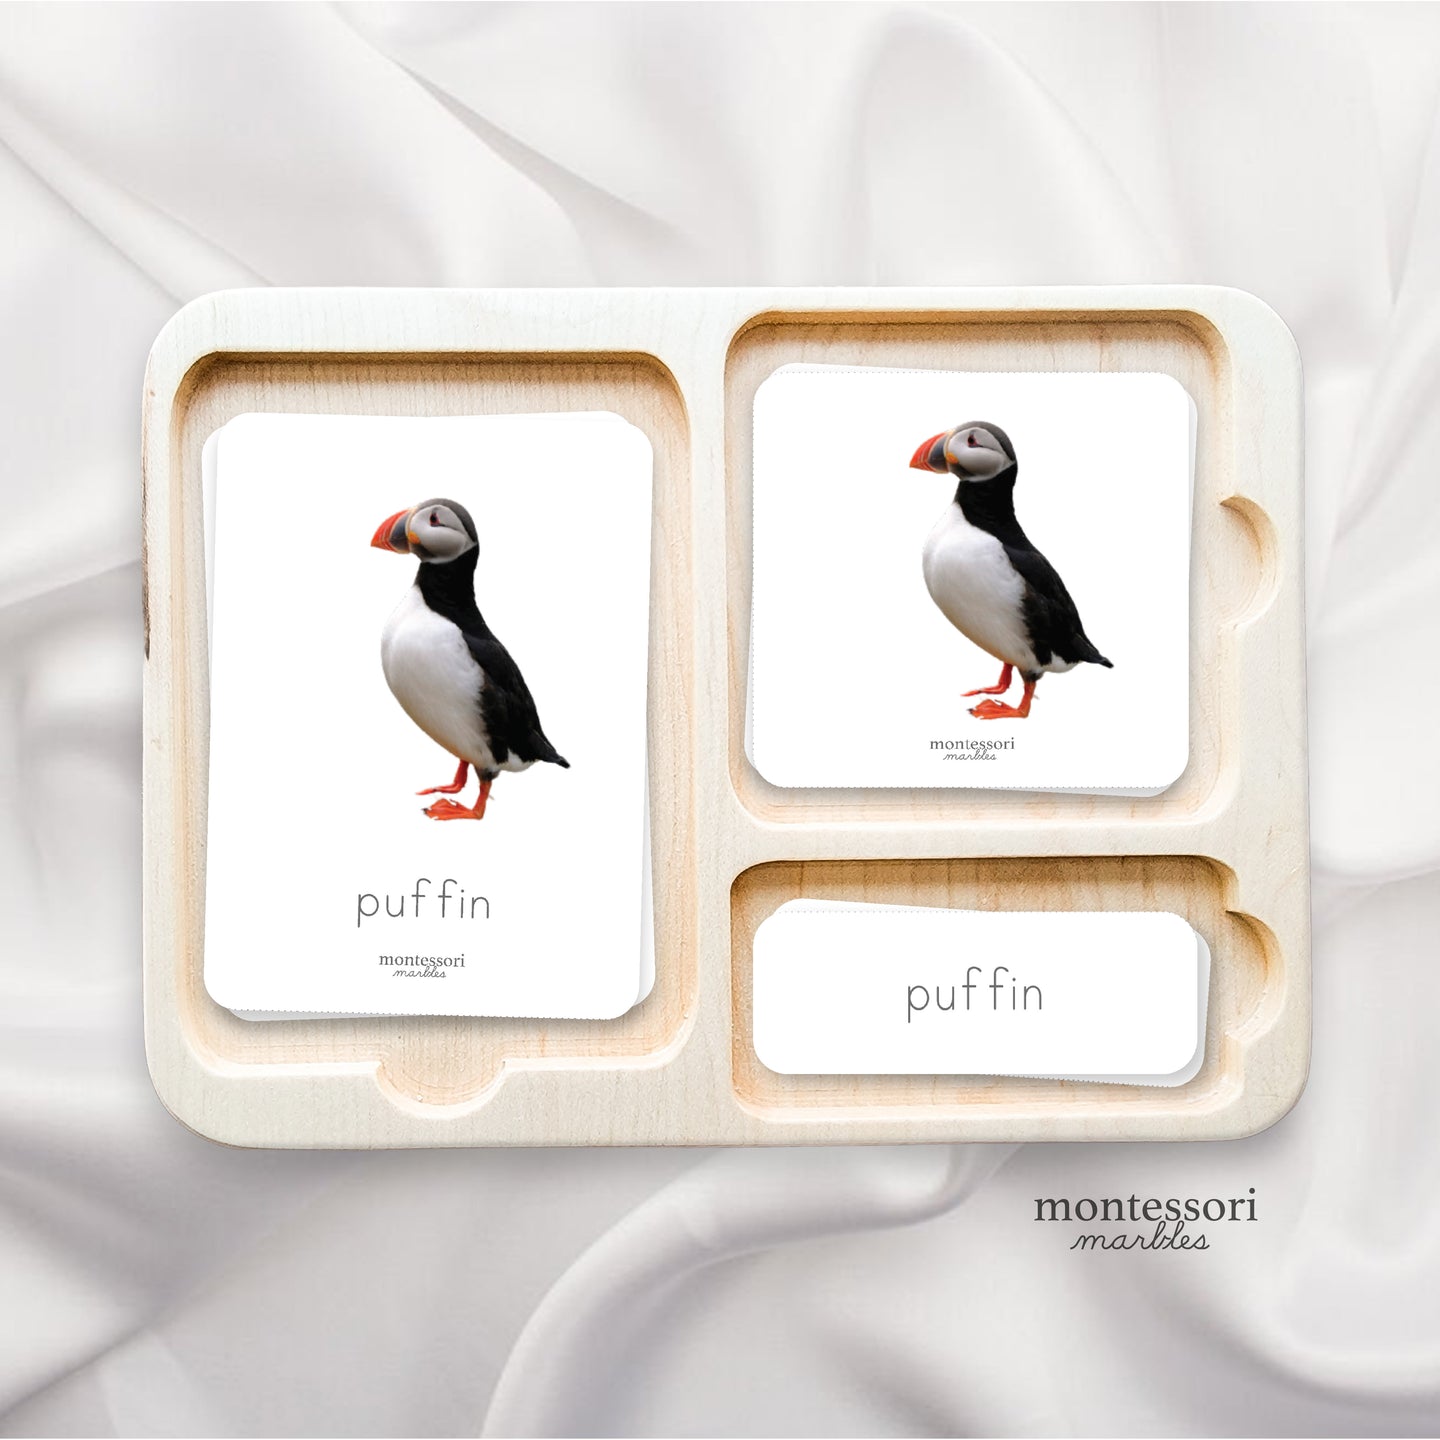 Polar Animals Nomenclature Cards